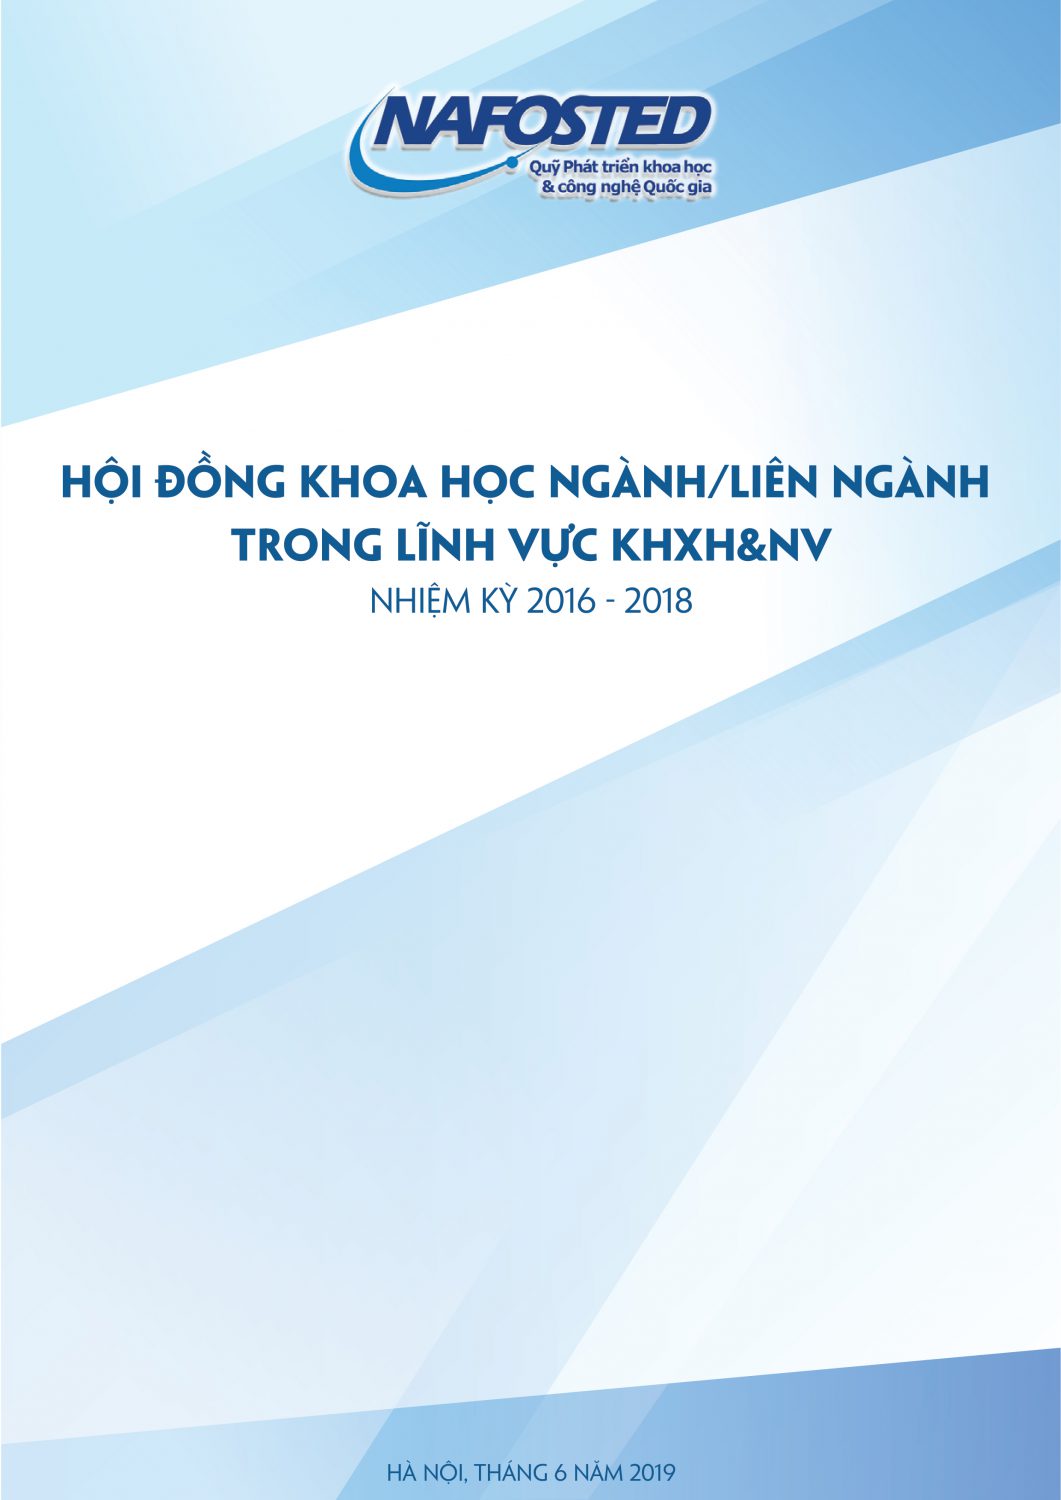 Thong tin HDKH KHXH 1306 v.7 copy-01